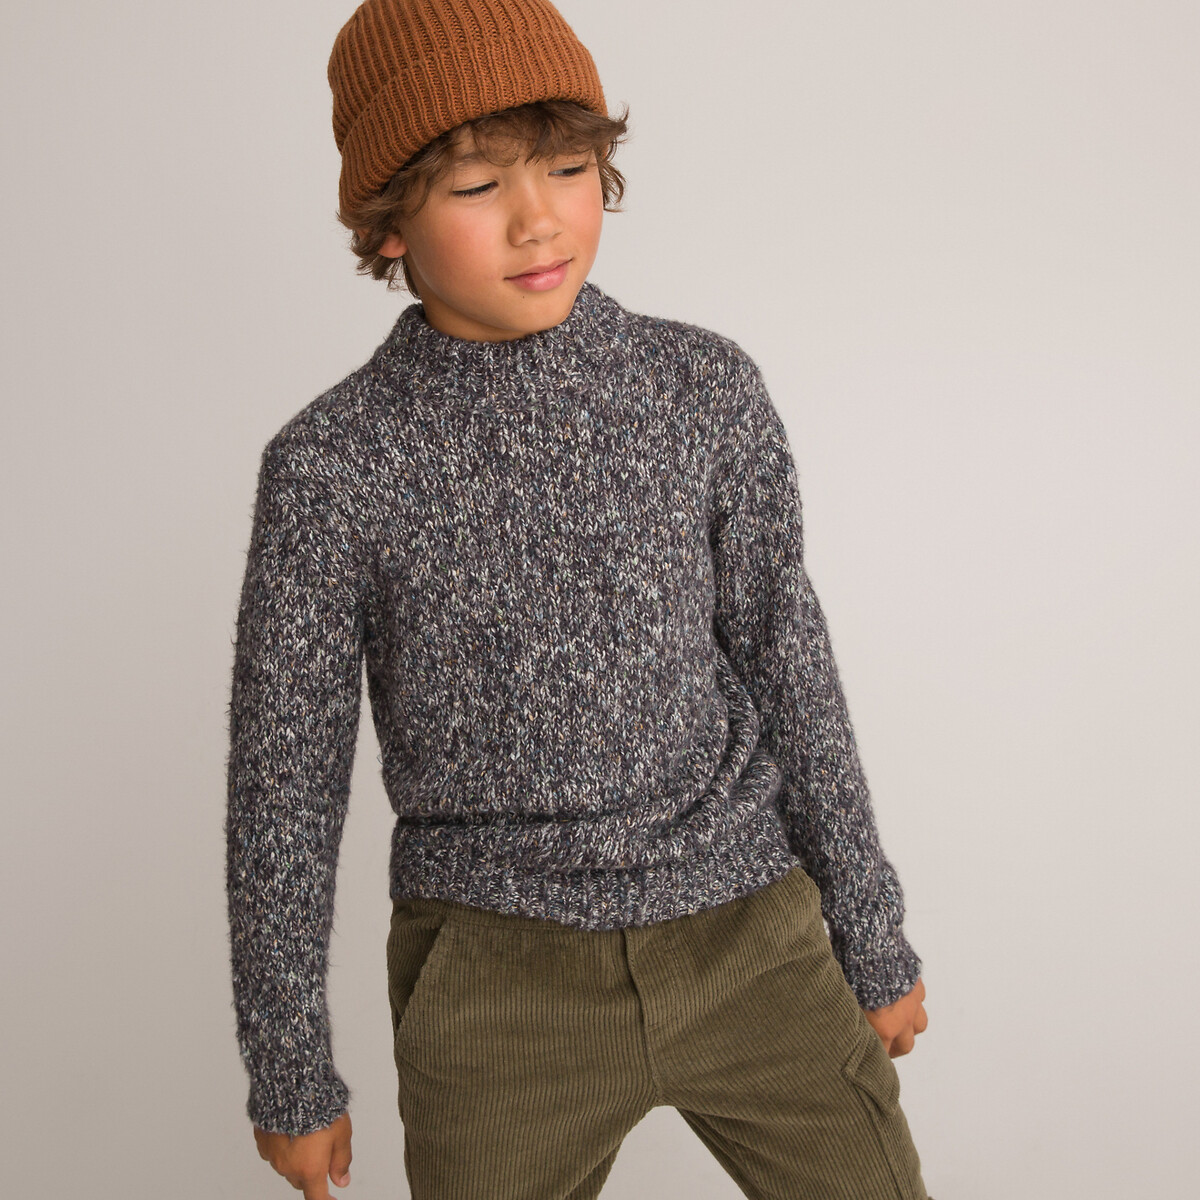 Пуловер Из плотного трикотажа с воротником-стойкой 12 лет -150 см серый